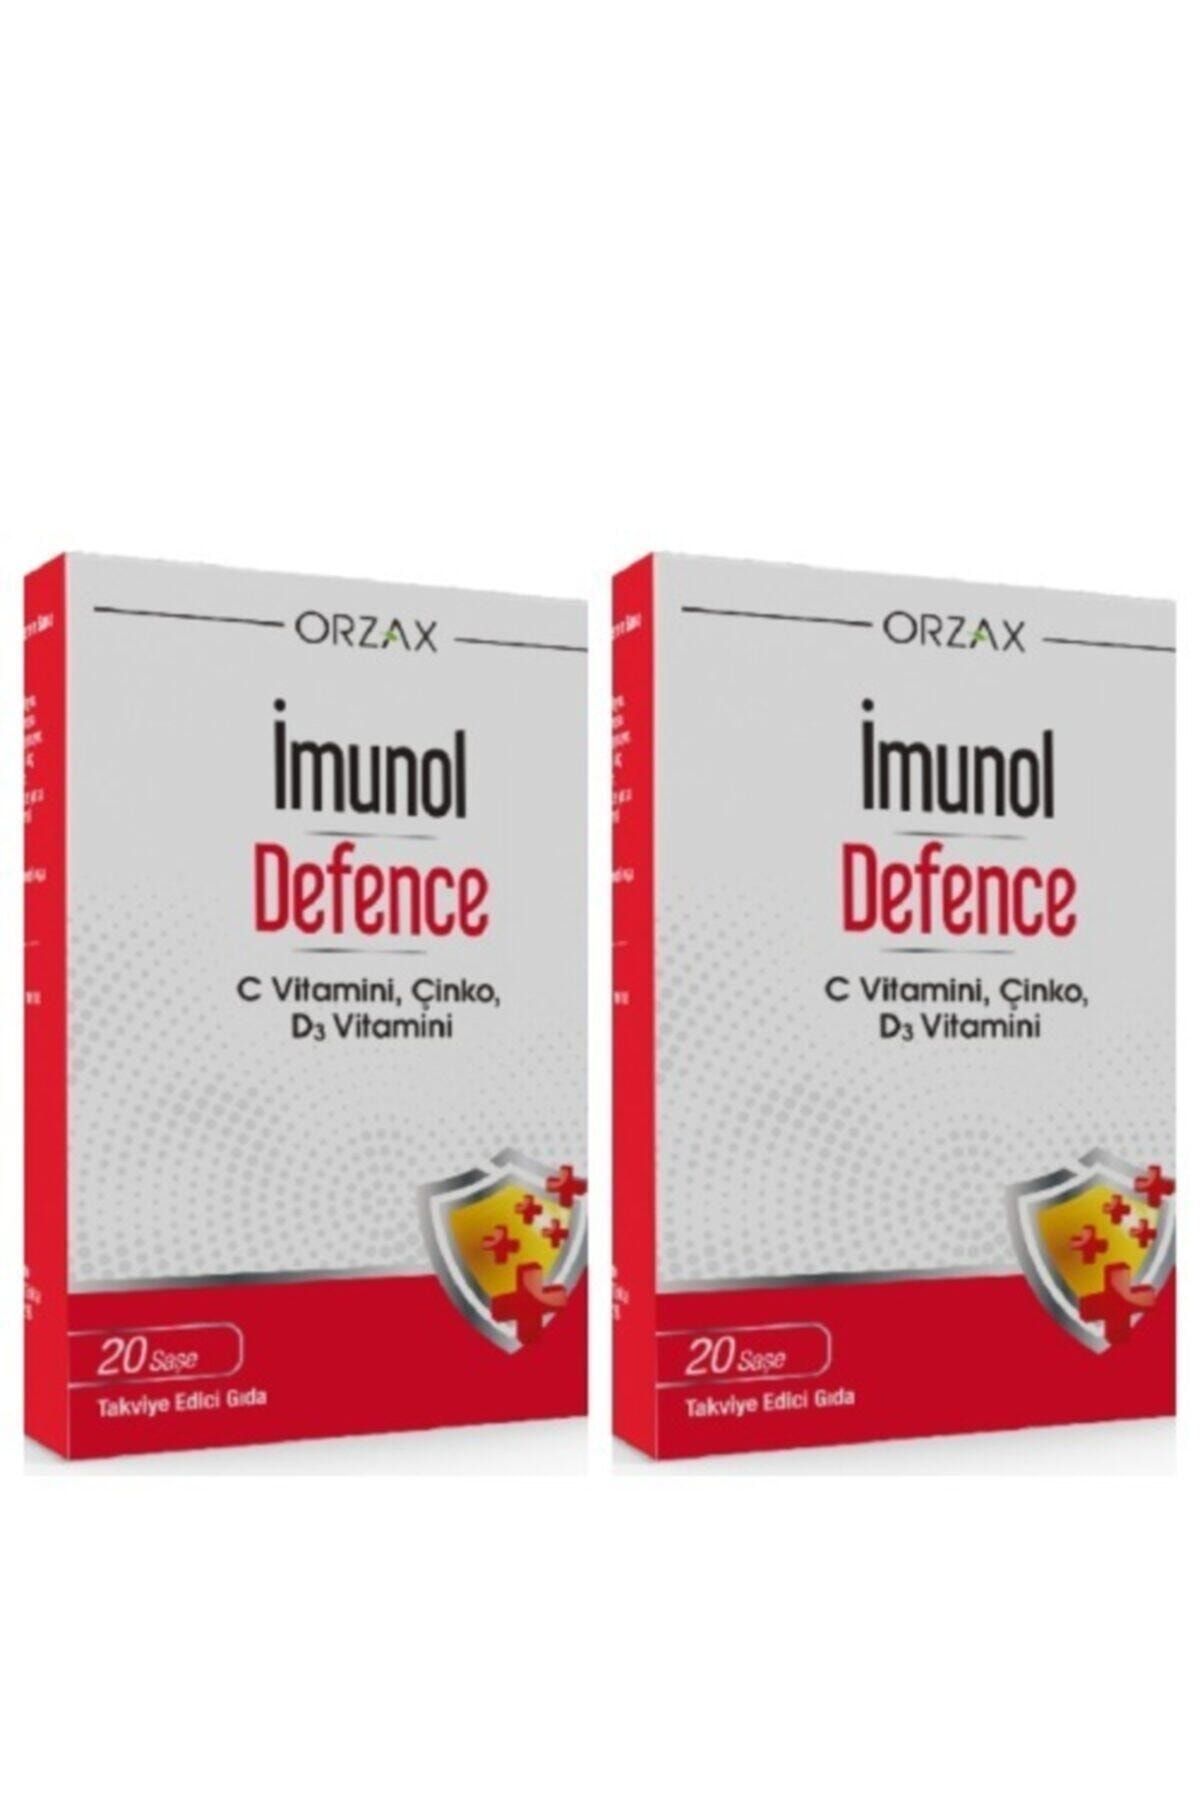 İMUNOL Imunol Defence Şase - 2 Adet